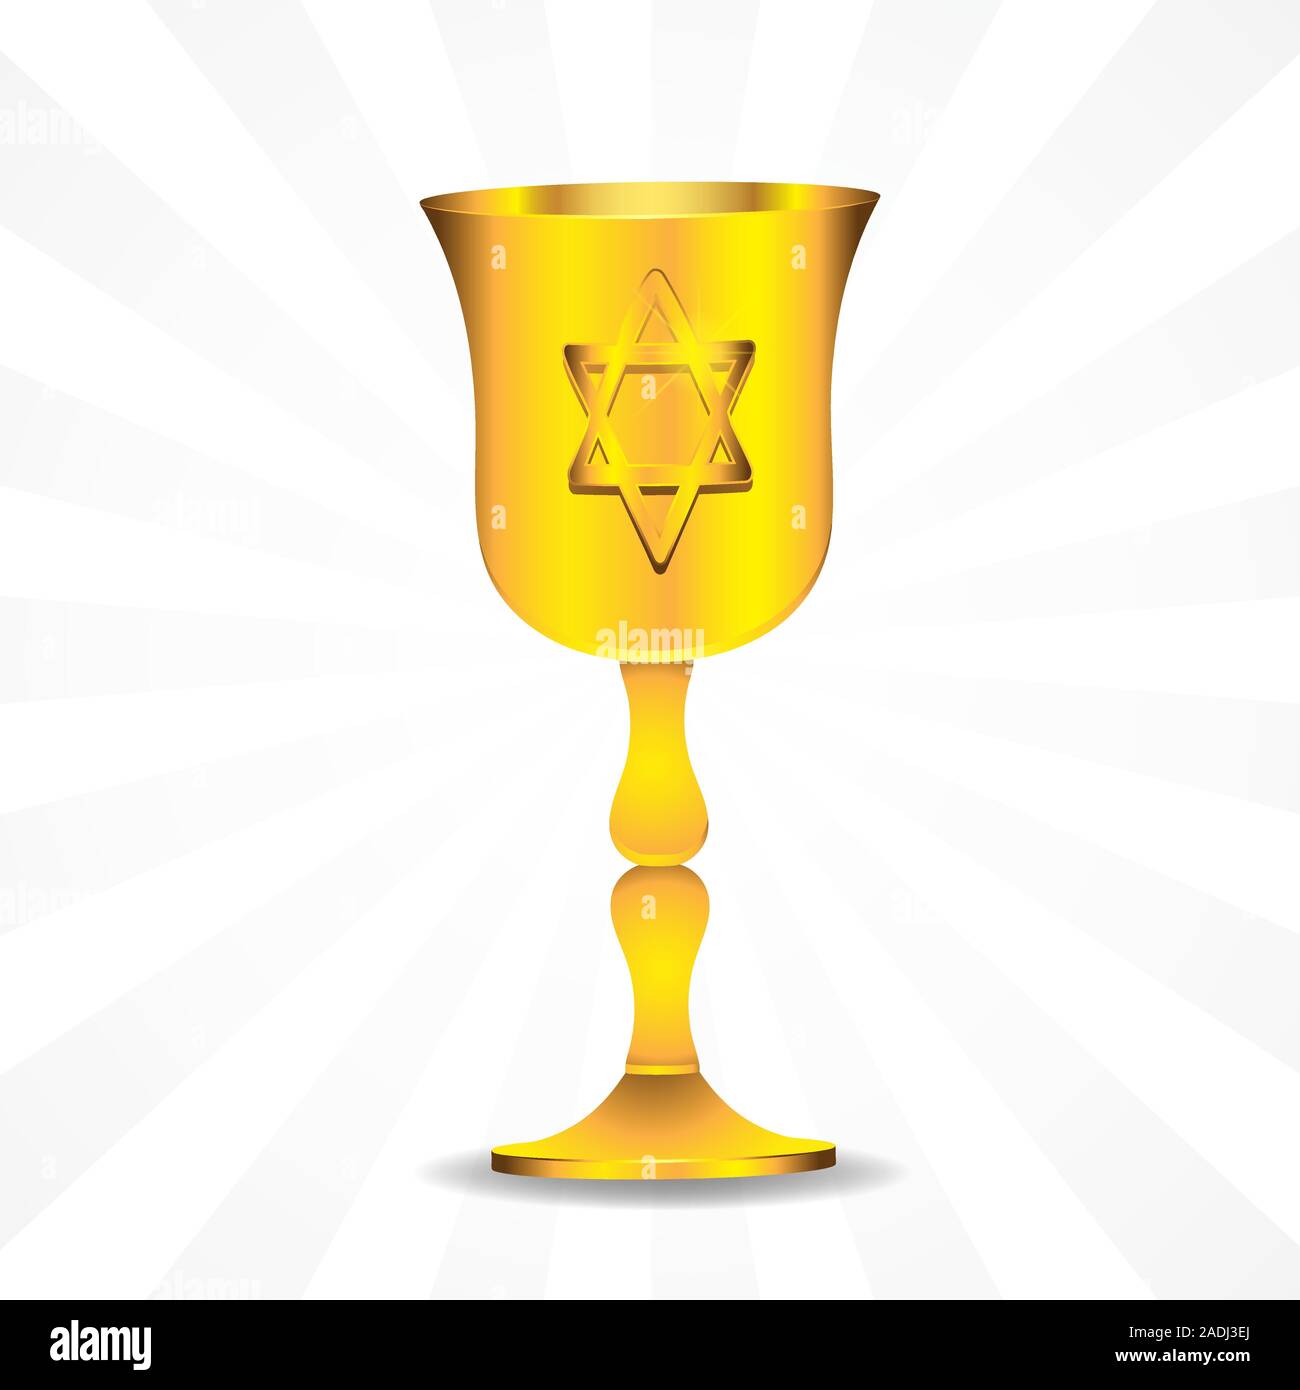 Golden bowl con la stella di Davide ebraico isolato su sfondo. Immagine vettoriale. Elemento di design. Illustrazione Vettoriale